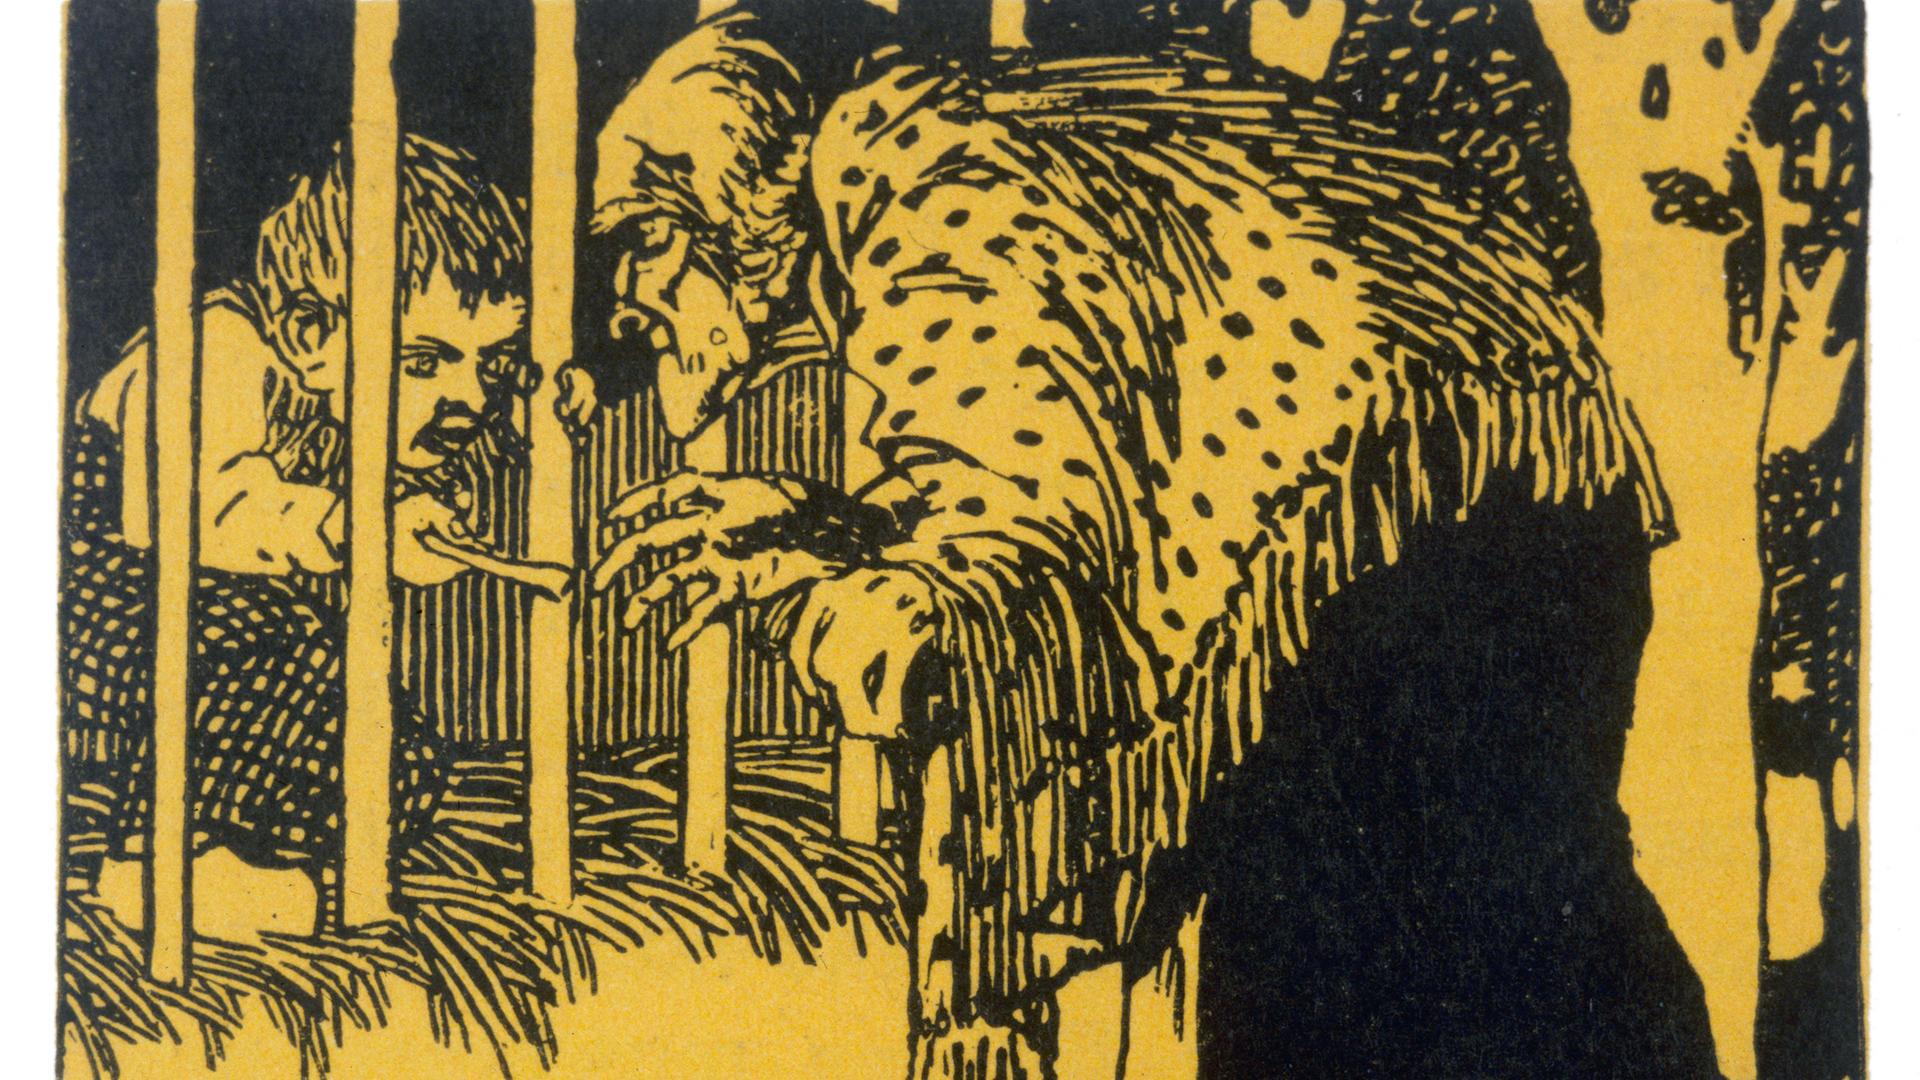 Auf einer Grafik ist zu sehen, wie sich eine Hexe zu einem Jungen in einem Käfig herab beugt. Der Junge einen kleinen Knochen in der Hand.